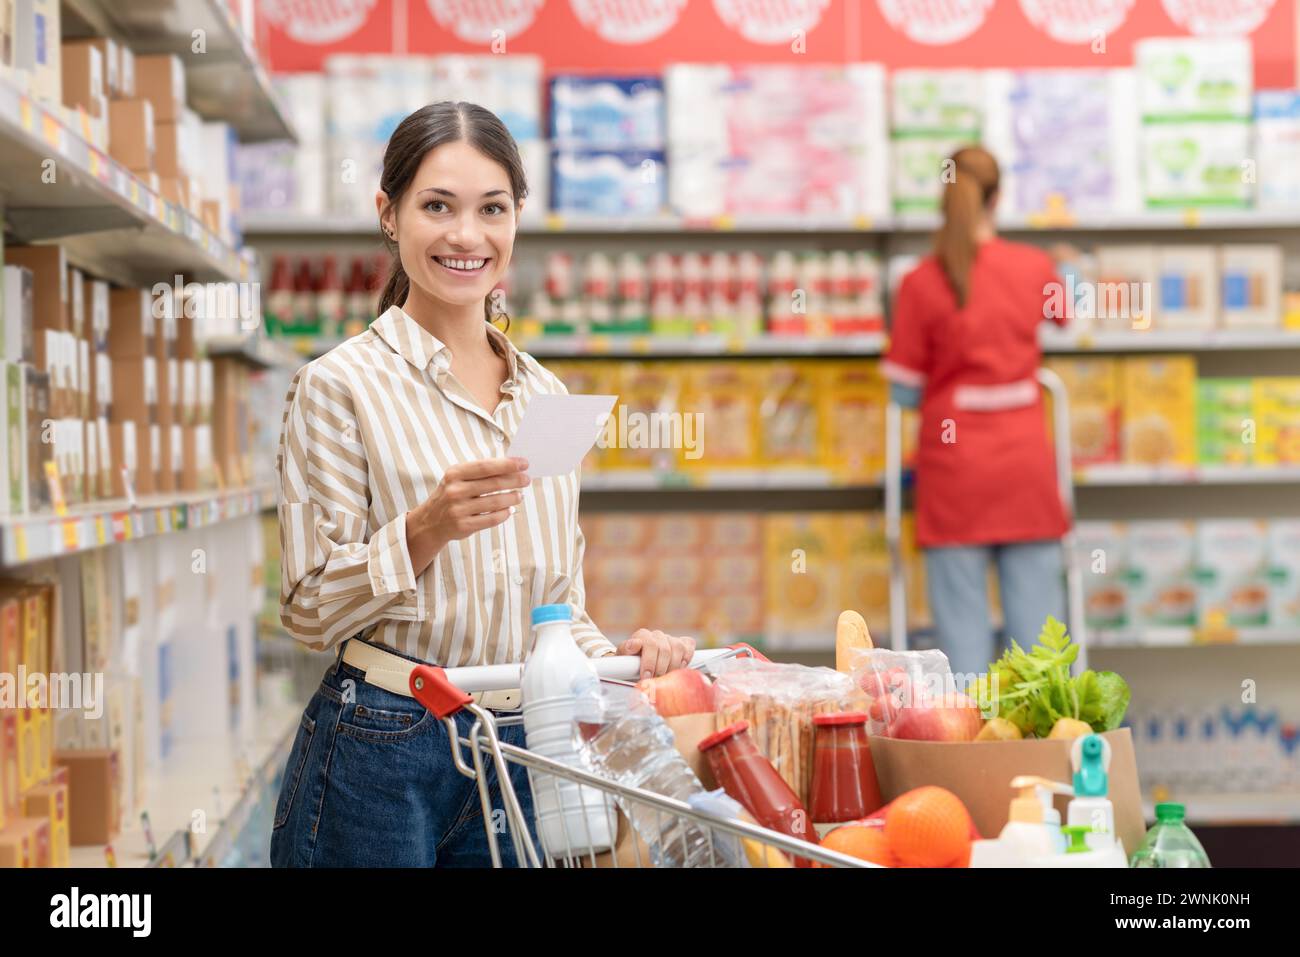 Porträt einer jungen lächelnden Frau, die Lebensmittel im Supermarkt kauft, hält eine Einkaufsliste und schiebt einen vollen Warenkorb Stockfoto